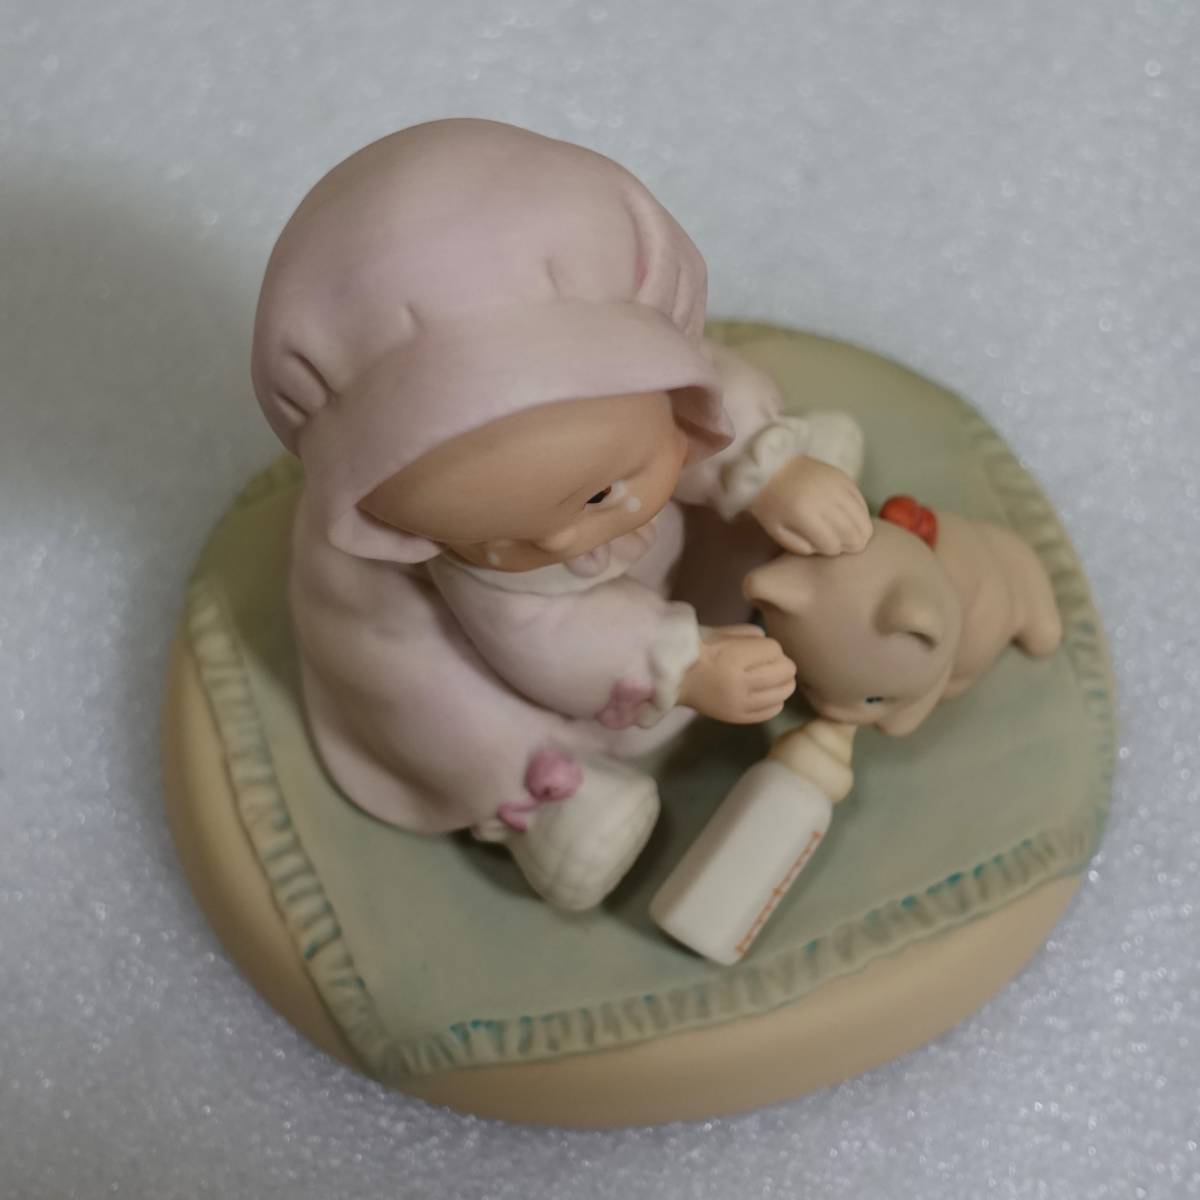 ◆エネスコ社 ◆Enescoマーベル ルーシー アトウェル 陶器人形 ◆メモリーズオブイエスタディ#523232 アトウェル人形◆置物◆赤ちゃんの画像9